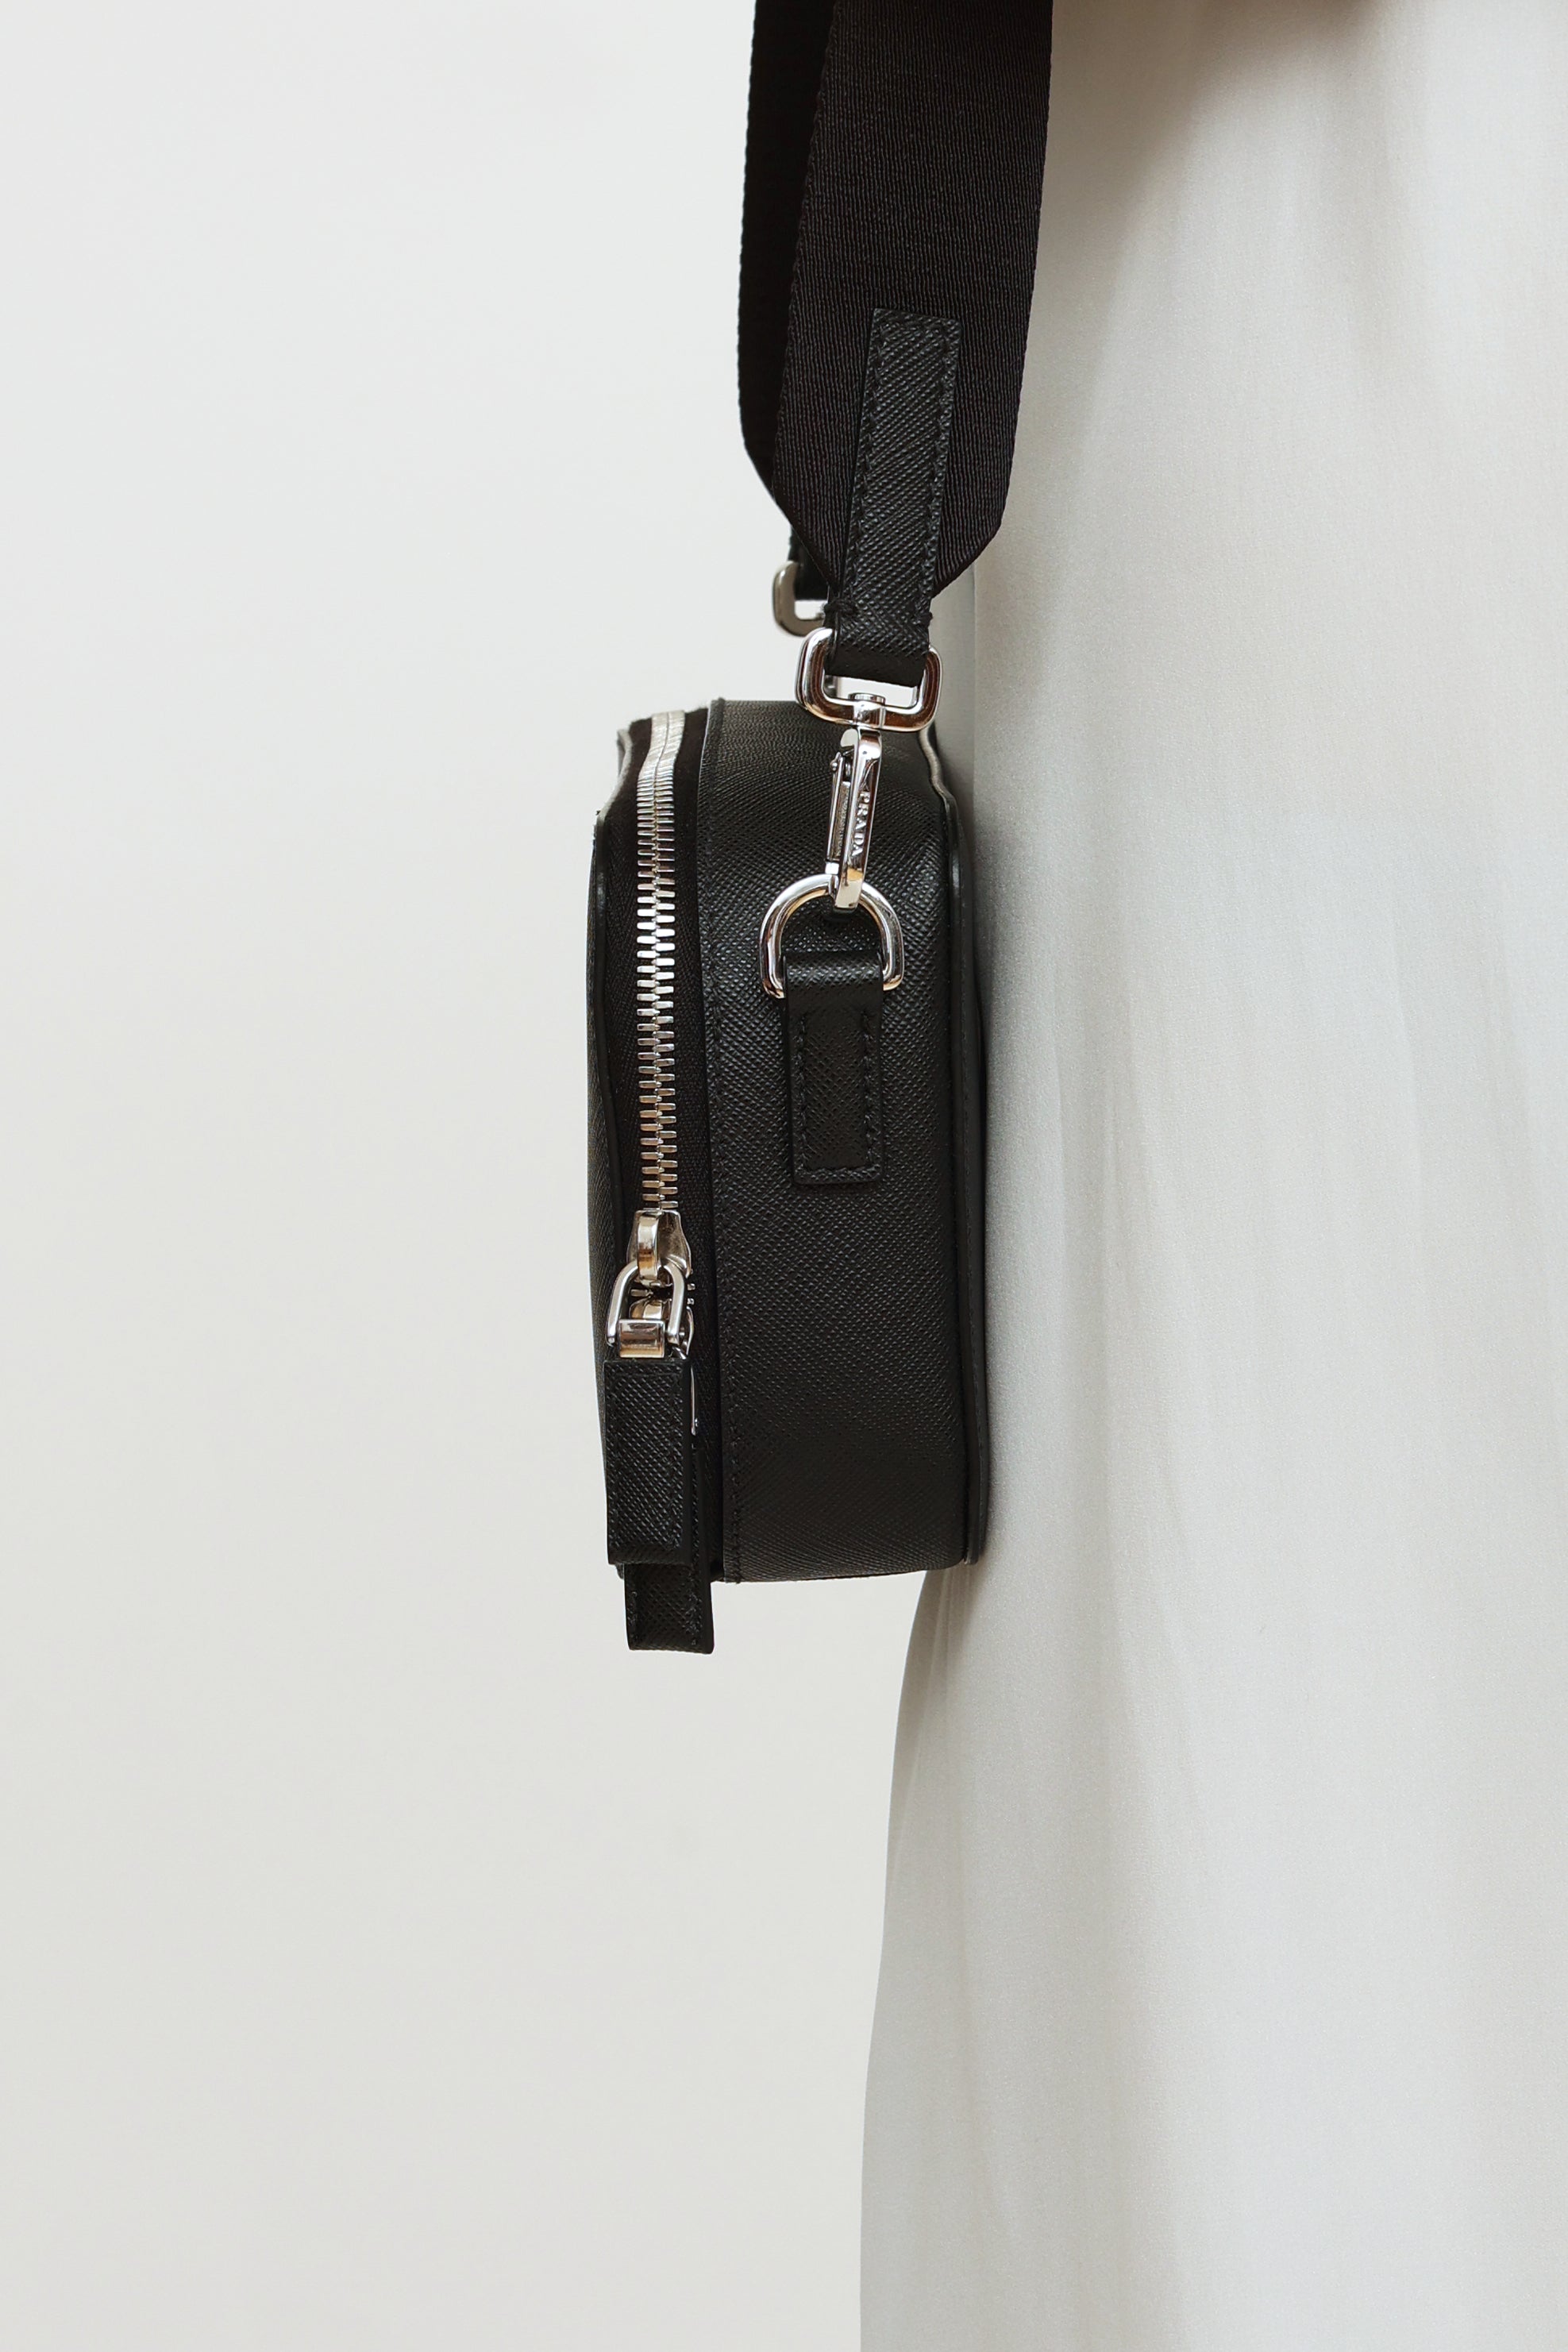 Black Prada Saffiano Business Bag – Designer Revival